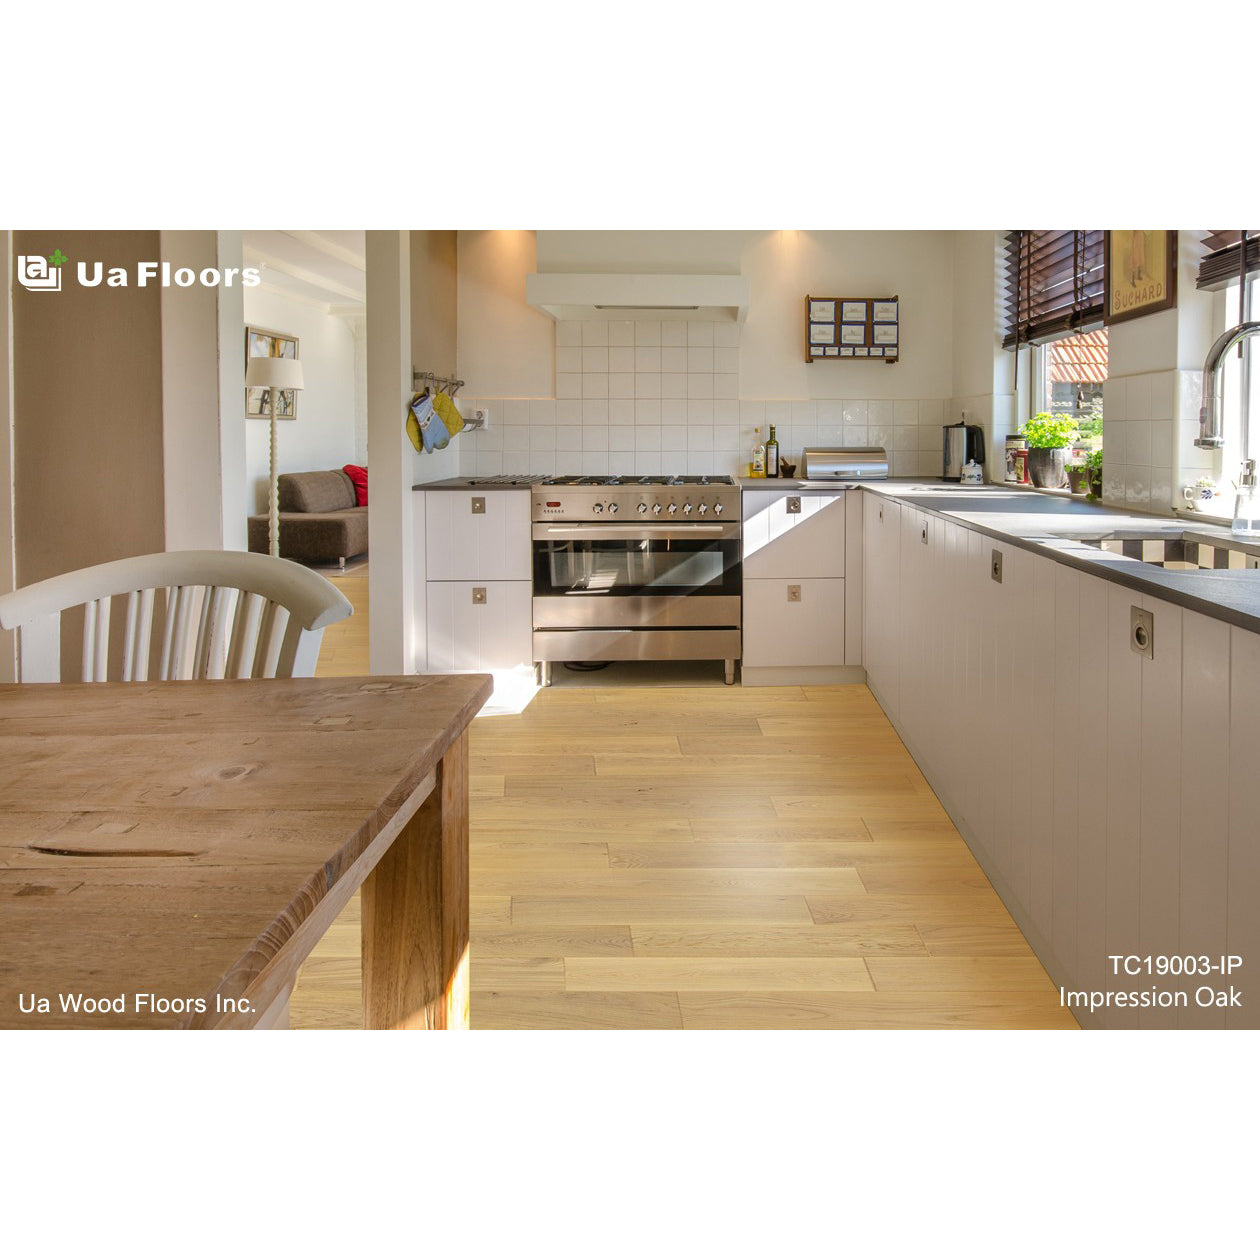 Ua Floors - Classics Collection - Impression Euro Oak